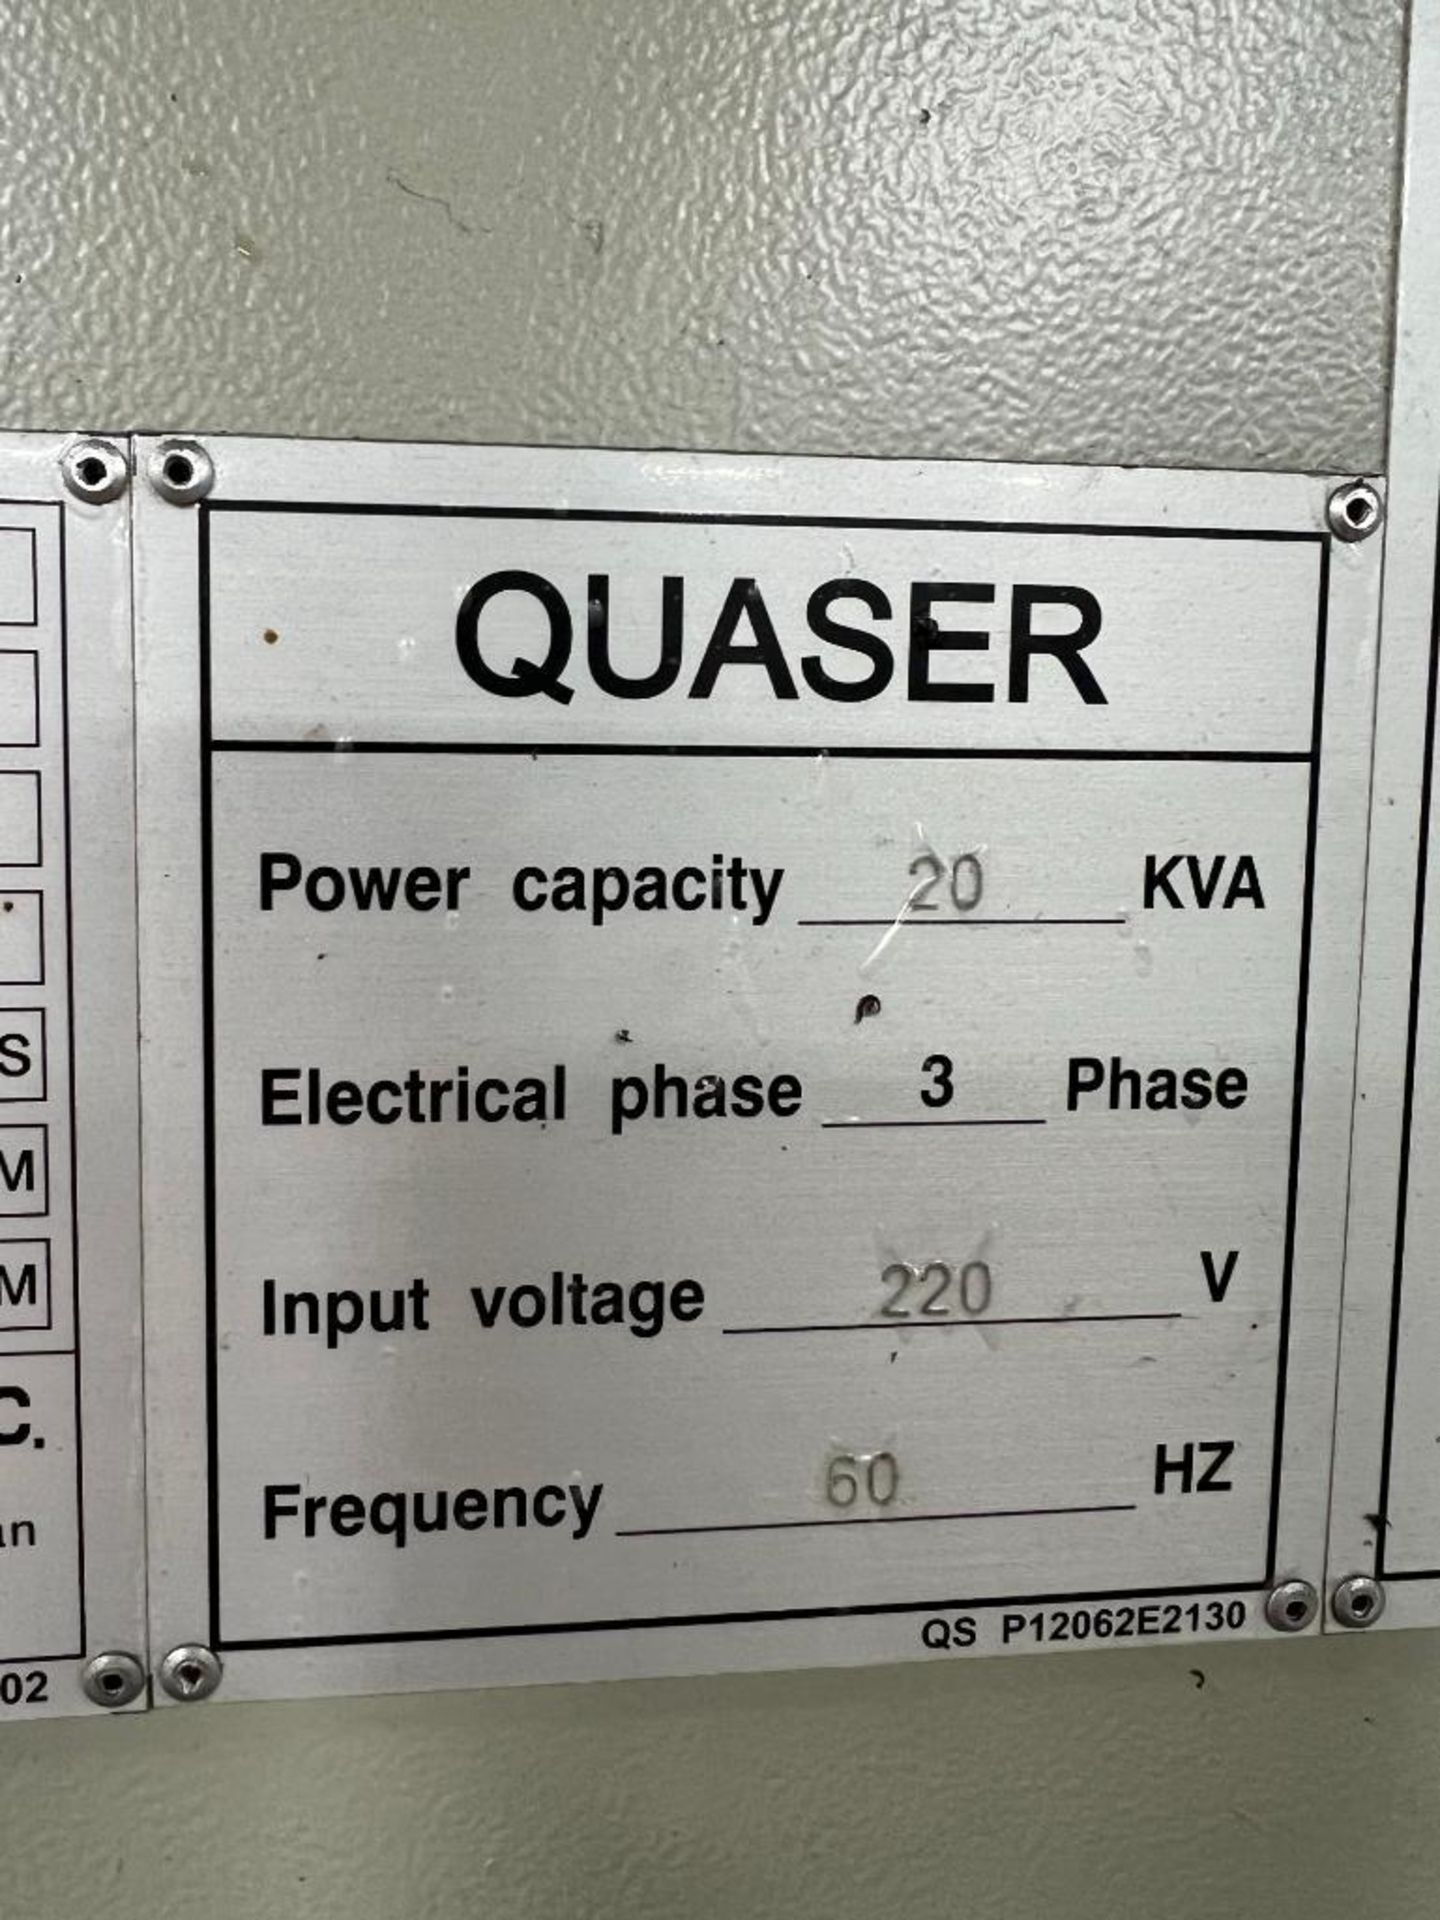 QUASER MV184 C/10C 3-Axis CNC Vertical Machining Center - Image 10 of 13